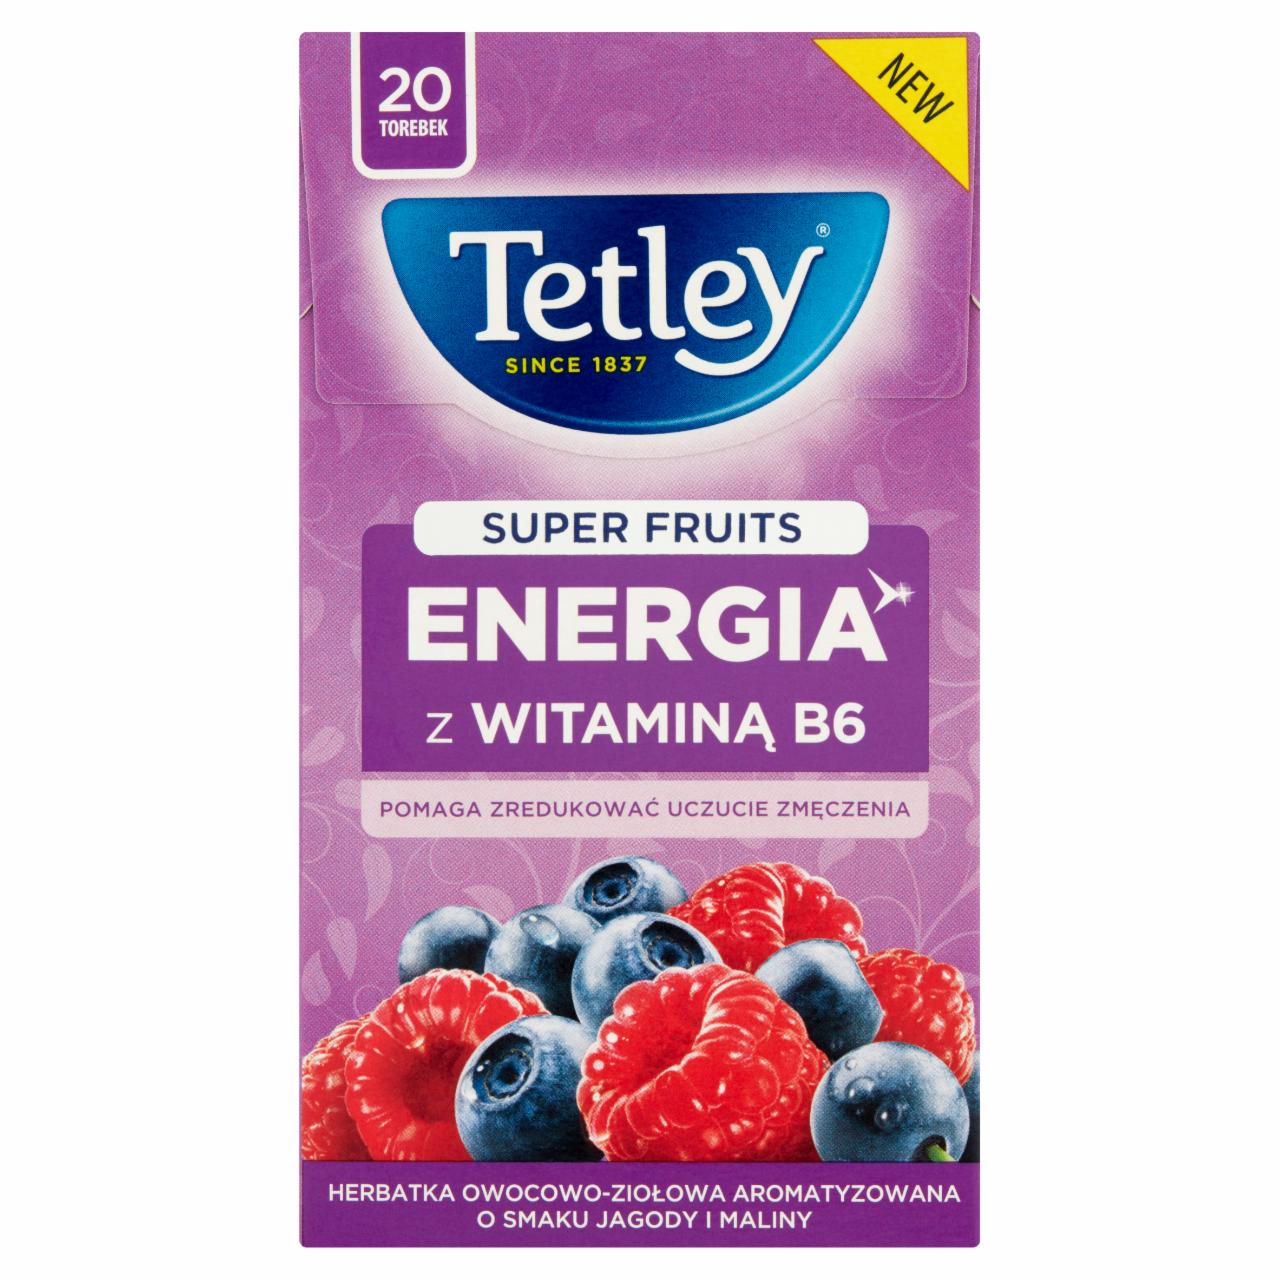 Zdjęcia - Tetley Super Fruits Energia Herbatka owocowo-ziołowa o smaku jagody i maliny 40 g (20 torebek)